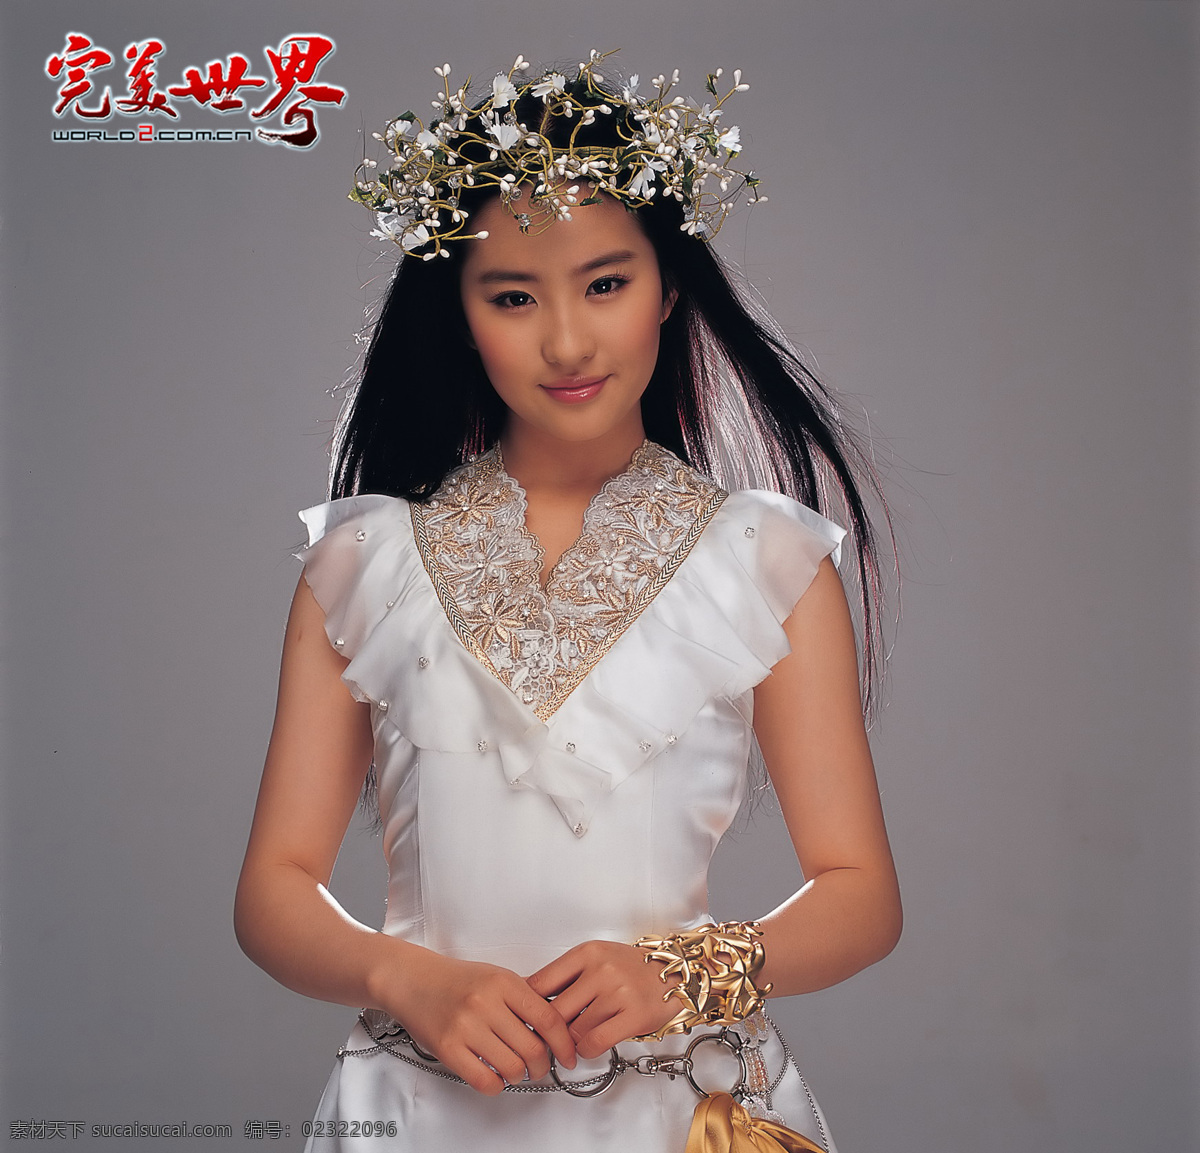 刘亦菲 完美 世界 完美世界 美女 美女大图 靓女 清晰美女 人物图库 明星偶像 摄影图库